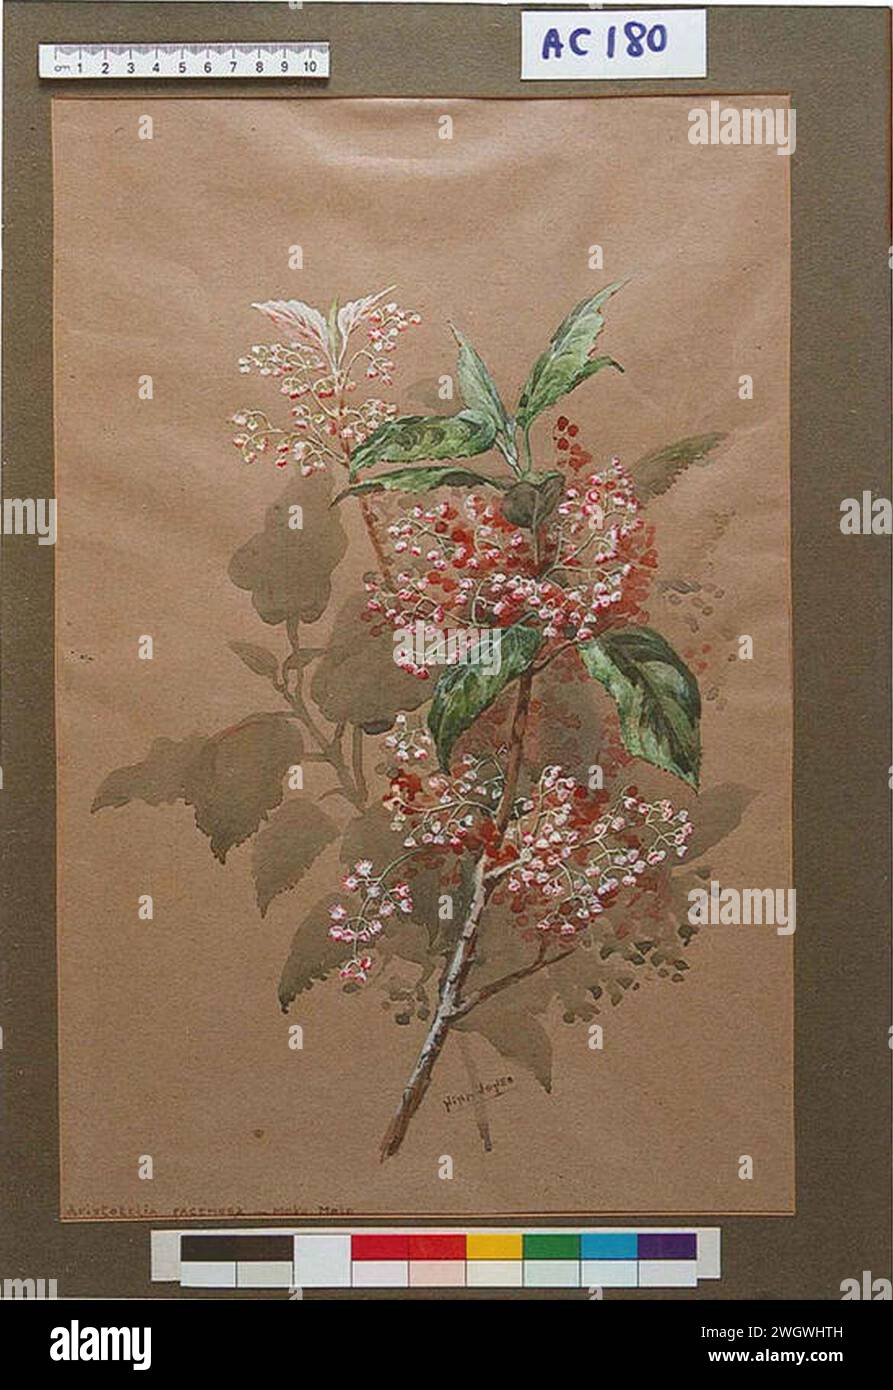 Aristotelia racemosa - Moko Moko by Nina Jones ac180. Stock Photo